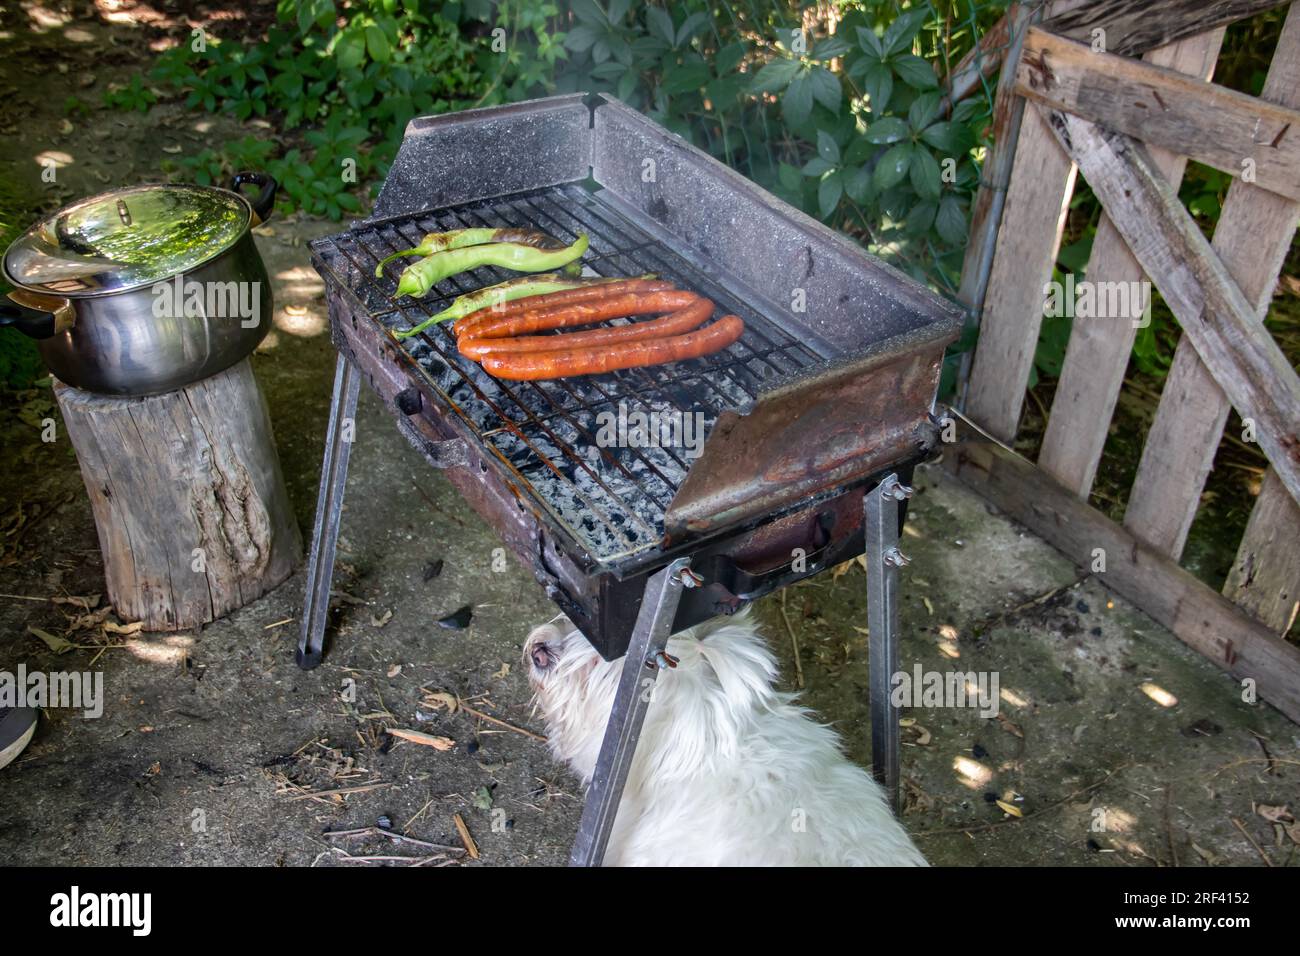 Piccolo e carino cane bianco sotto il barbecue a carbone, aspettandosi del cibo. Il Grill si trova nel cortile di casa di campagna, salsicce alla griglia e peperoni verdi alla griglia Foto Stock